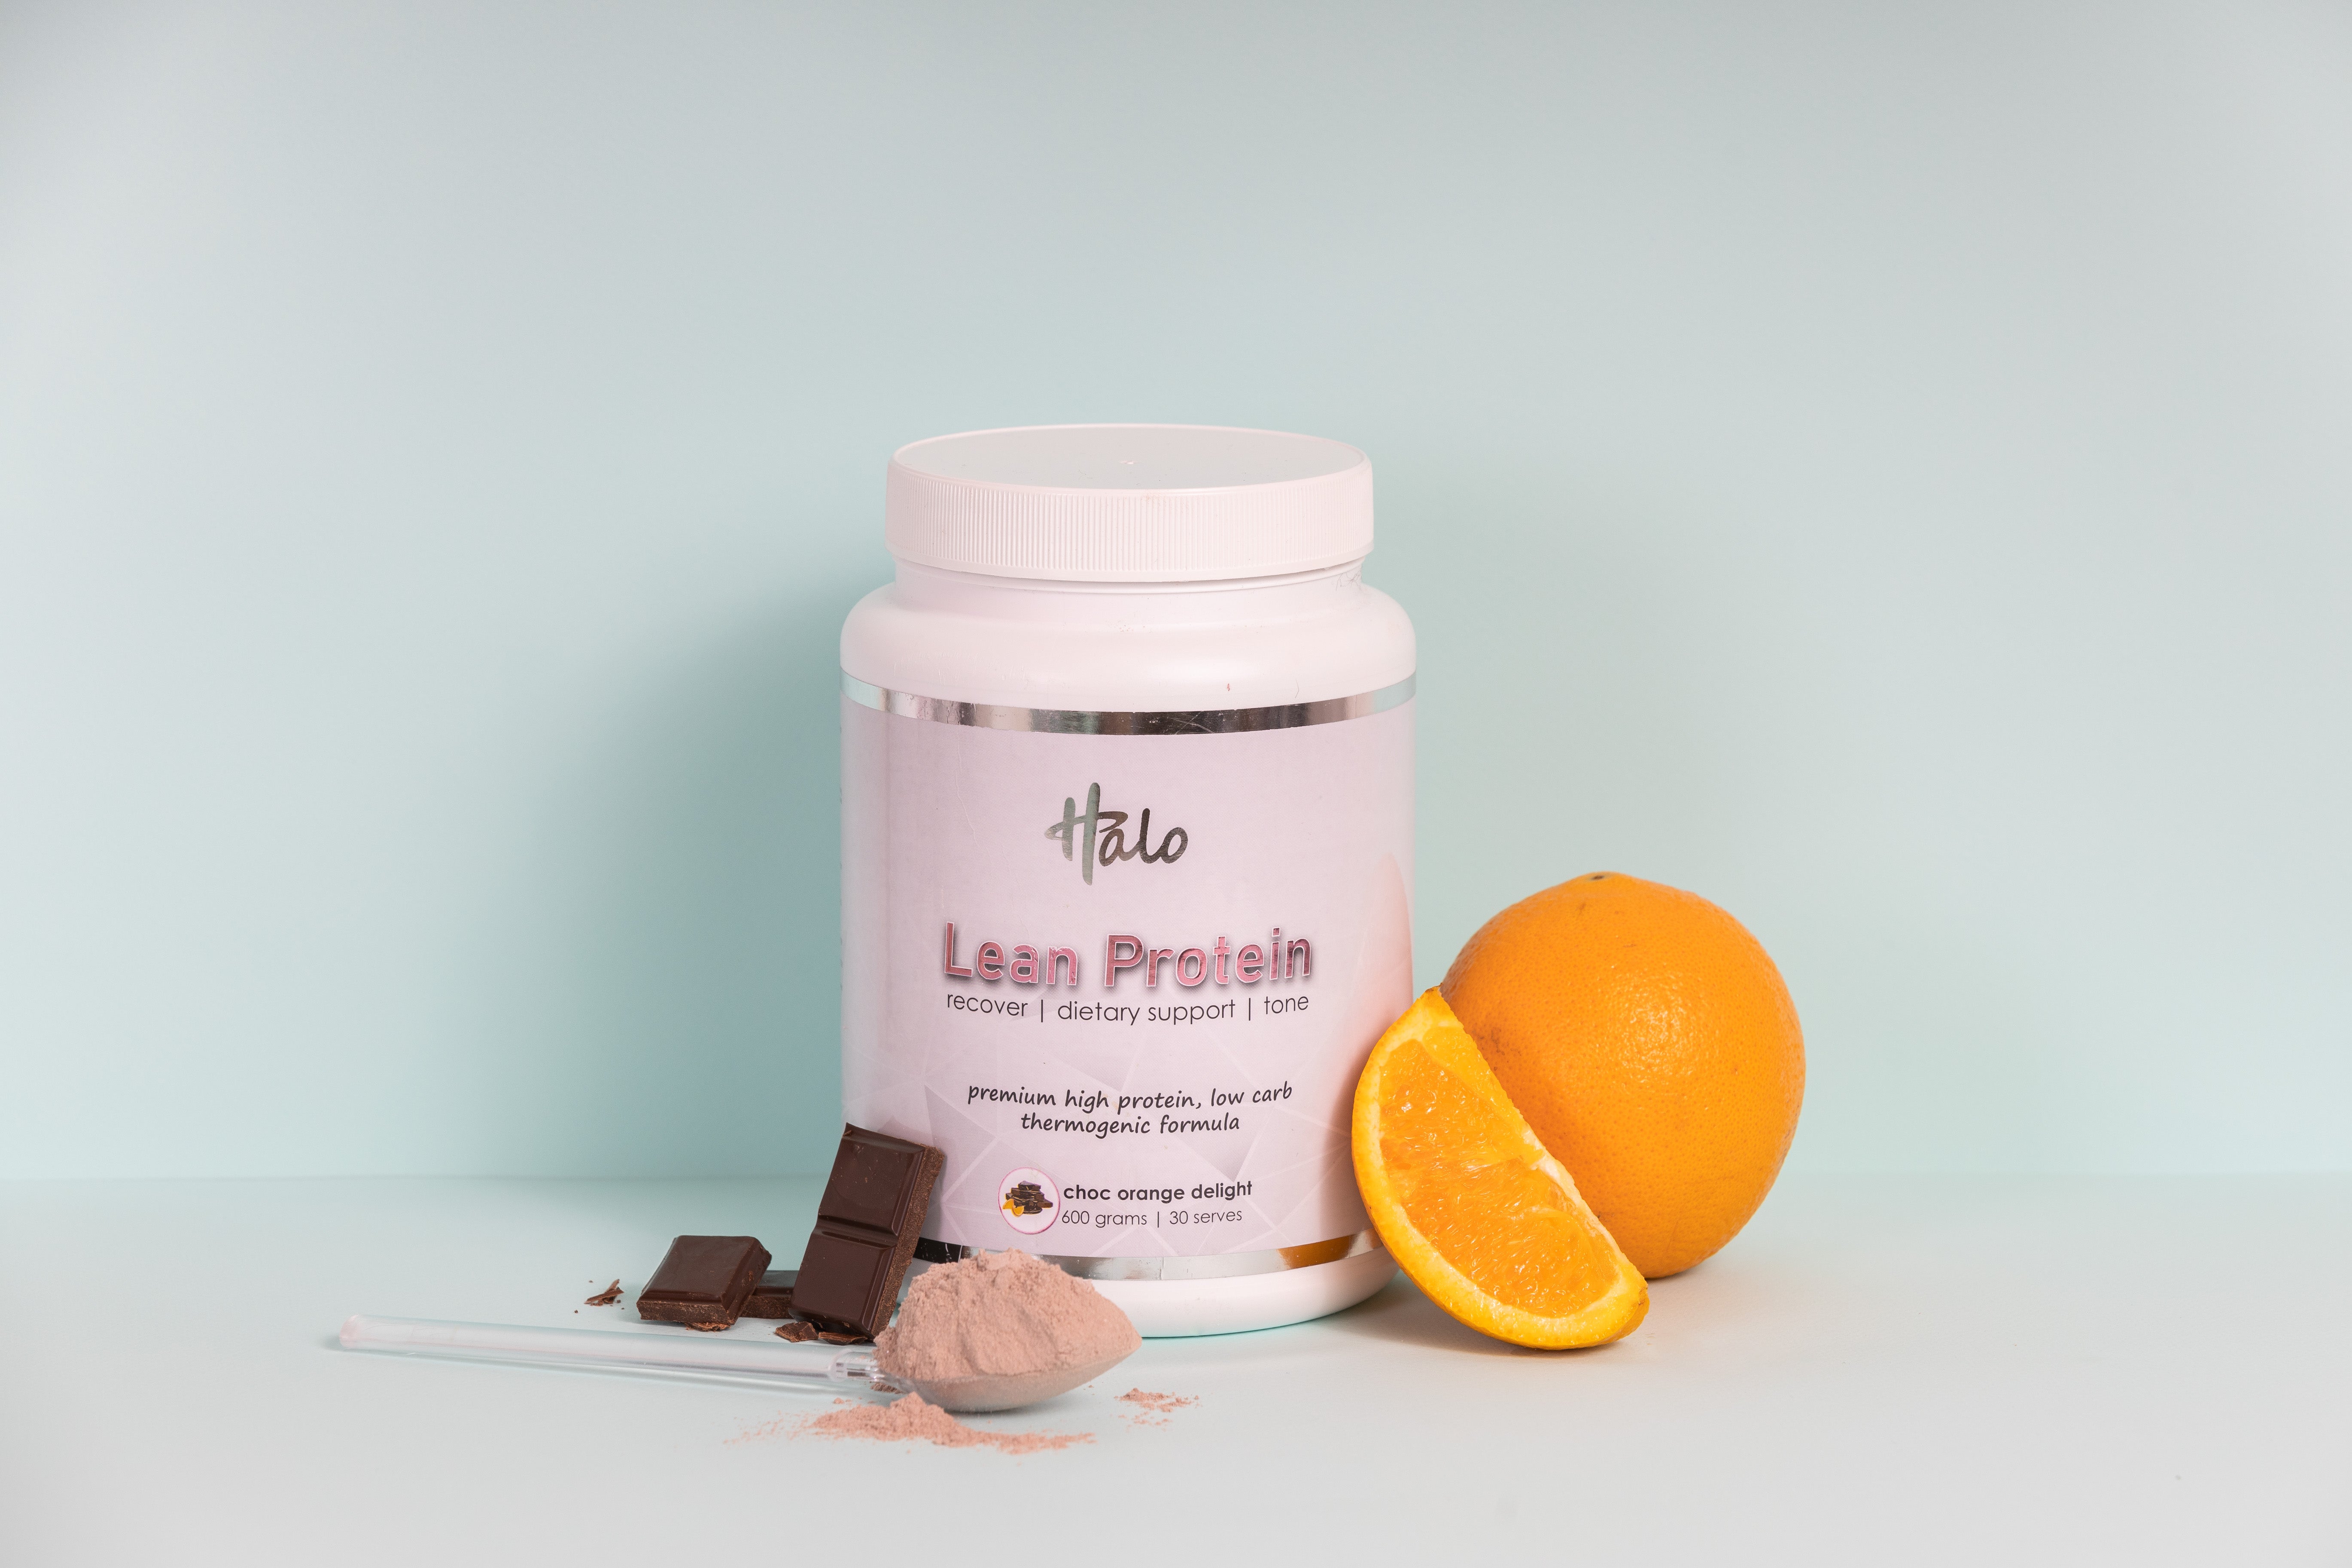 Lean Protein 600g - Choc Orange